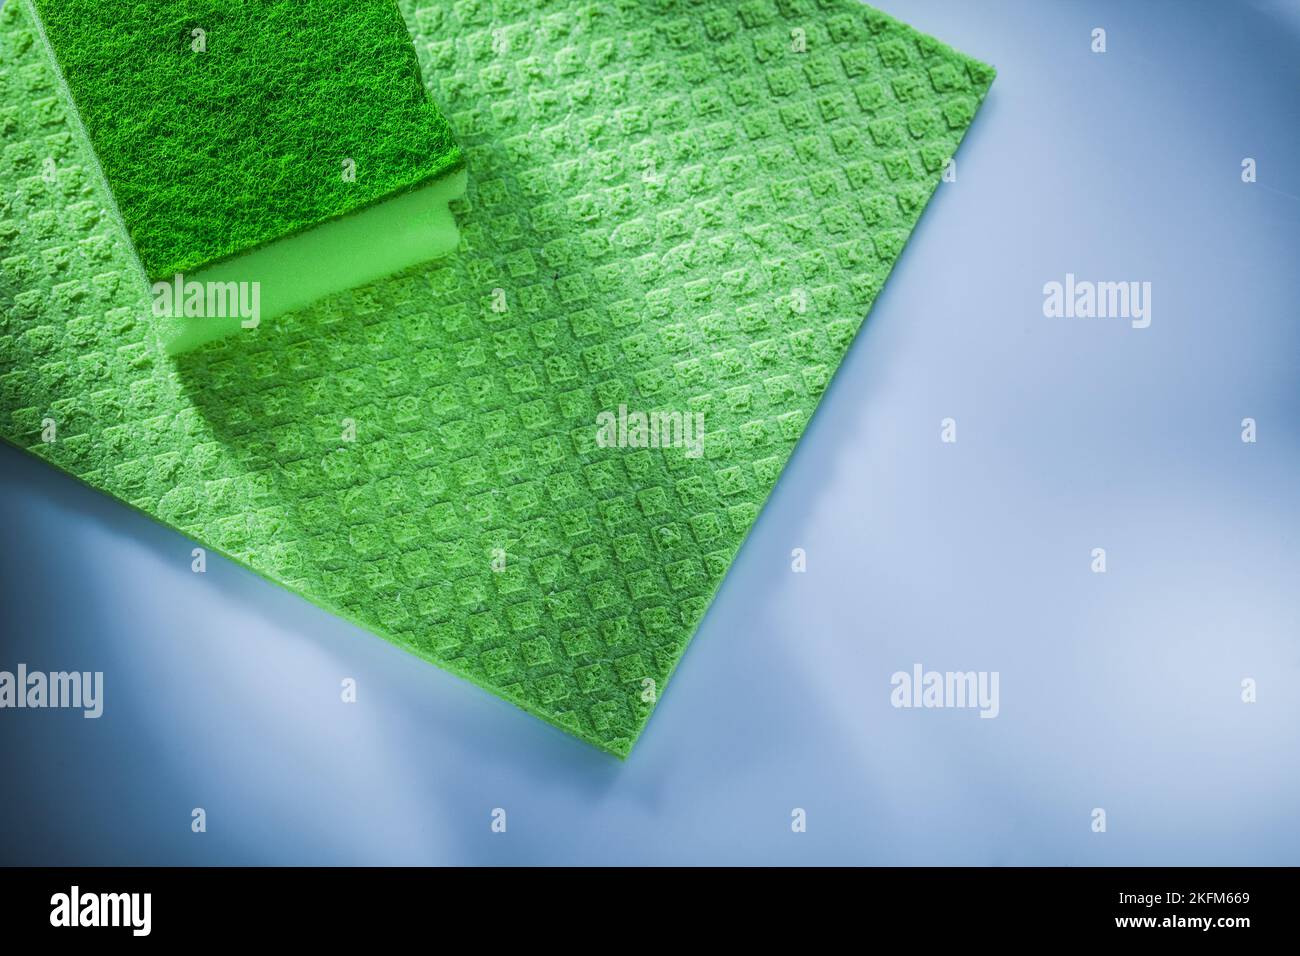 Household washcloth sponge on white surface. Stock Photo